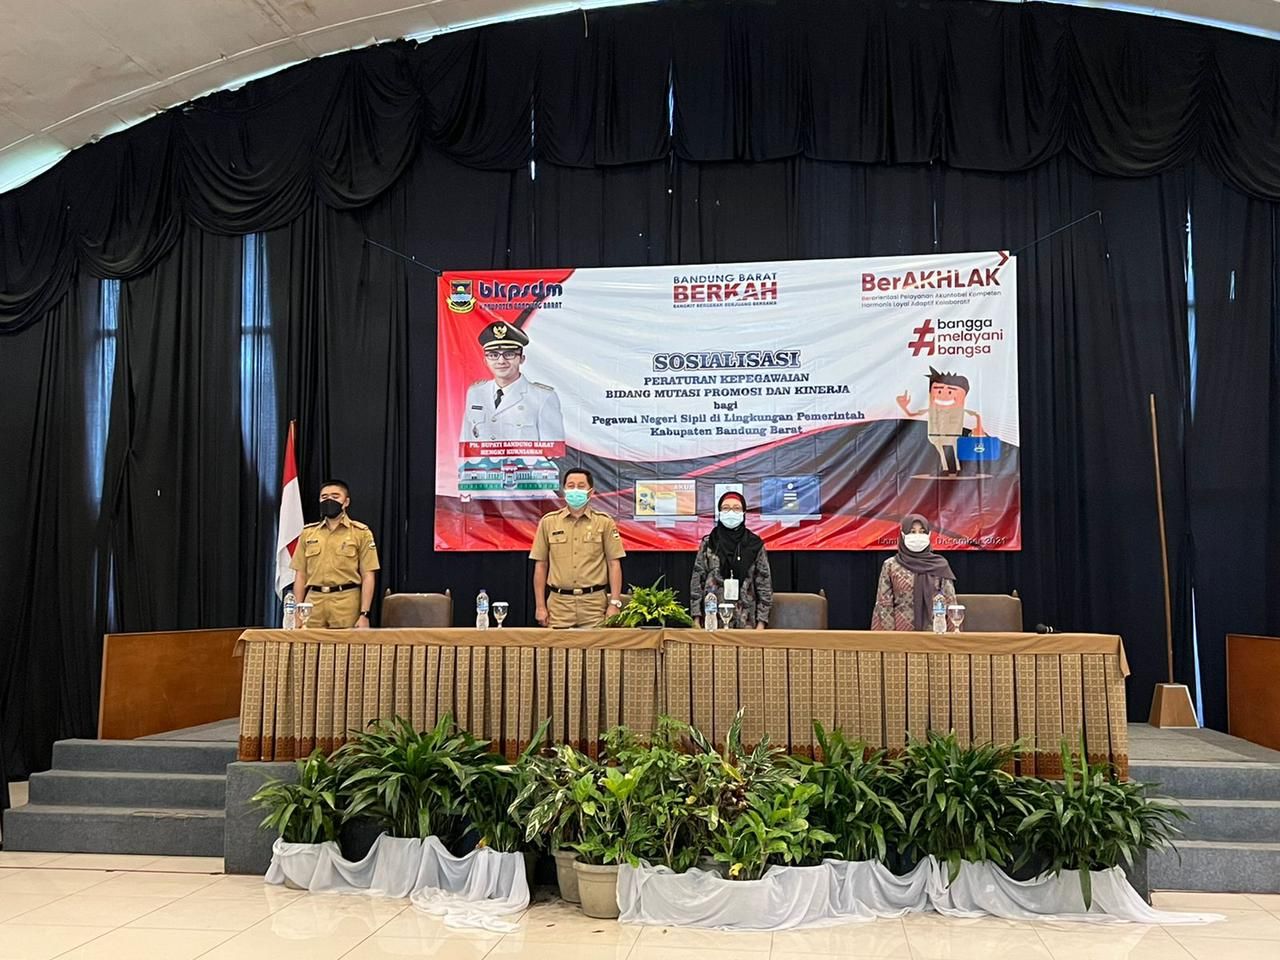 acara "Sosialisasi Peraturan Kepegawaian Bidang Mutasi Promosi dan Kinerja Bagi PNS di Lingkungan Pemkab Bandung Barat" di Hotel Panorama Lembang, Selasa 14 Desember 2021.